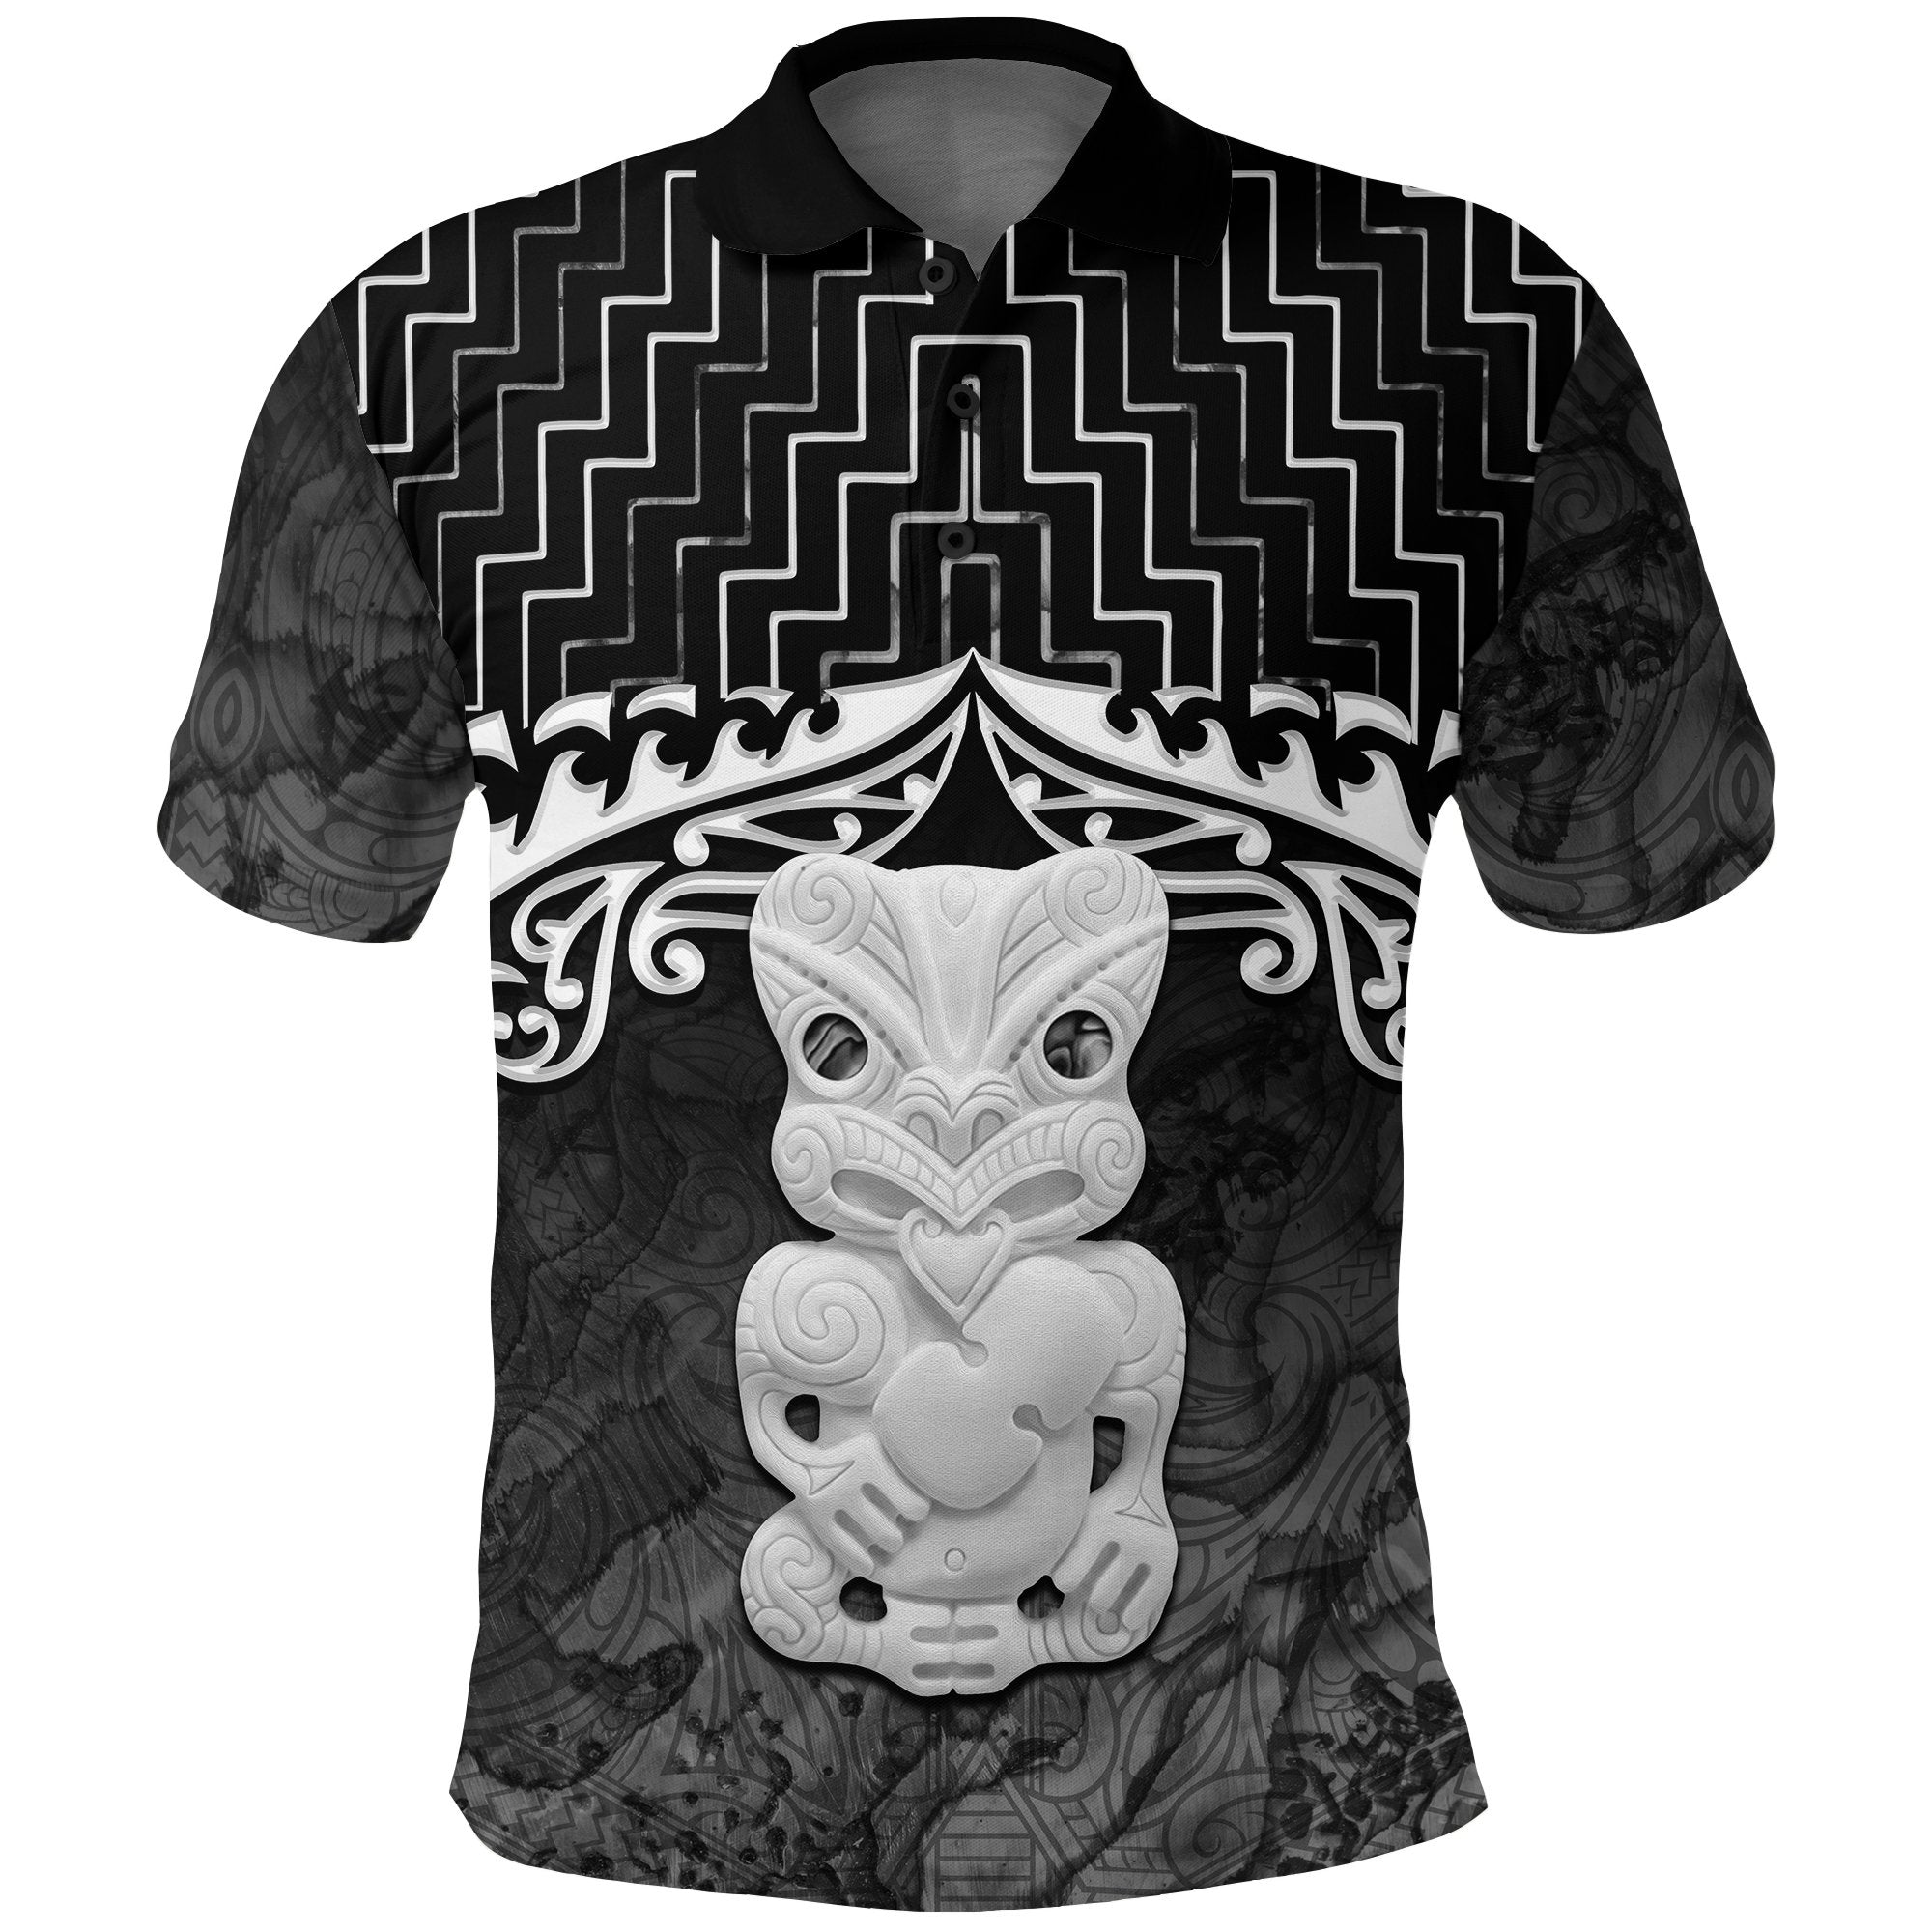 New Zealand Maori Polo Shirt, Poutama Hei Tiki Golf Shirt Black Unisex Black - Polynesian Pride